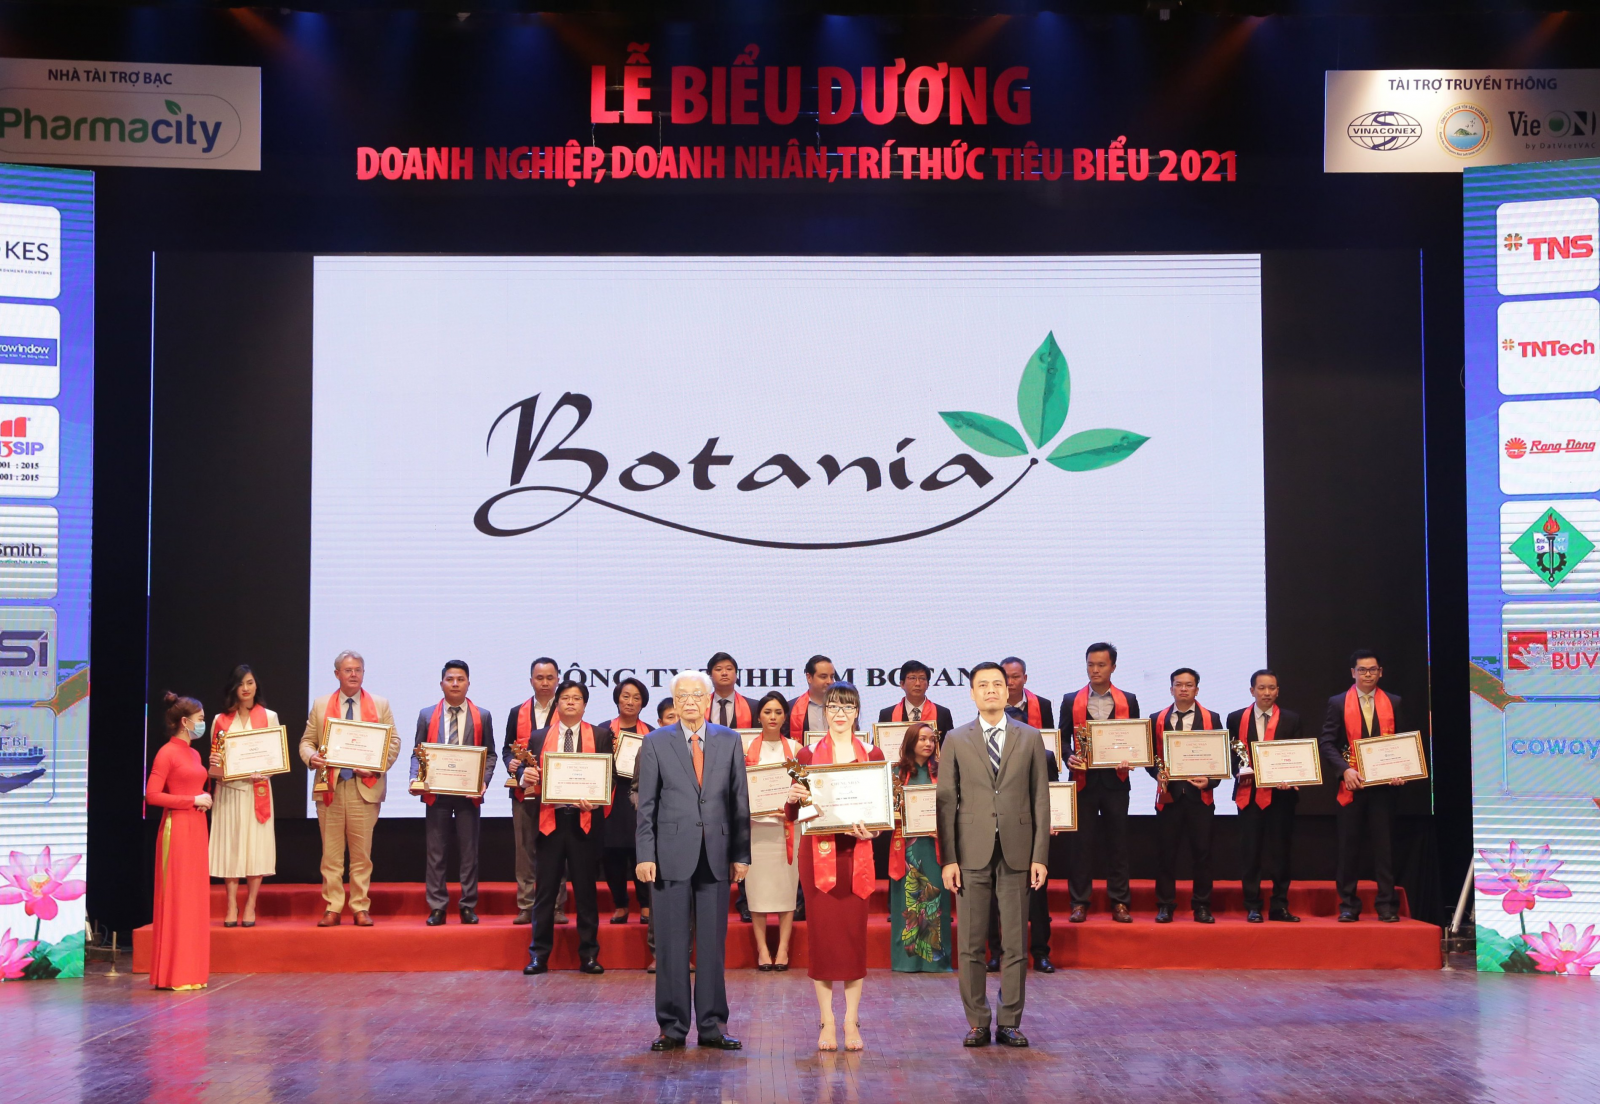 Đại diện công ty Botania lên nhận giải thưởng do ông Đặng Hoàng Giang – Thứ trưởng Bộ Ngoại Giao và ông Cao Sỹ Kiêm – Nguyên thống đốc ngân hàng nhà nước Việt Nam trao tặng.